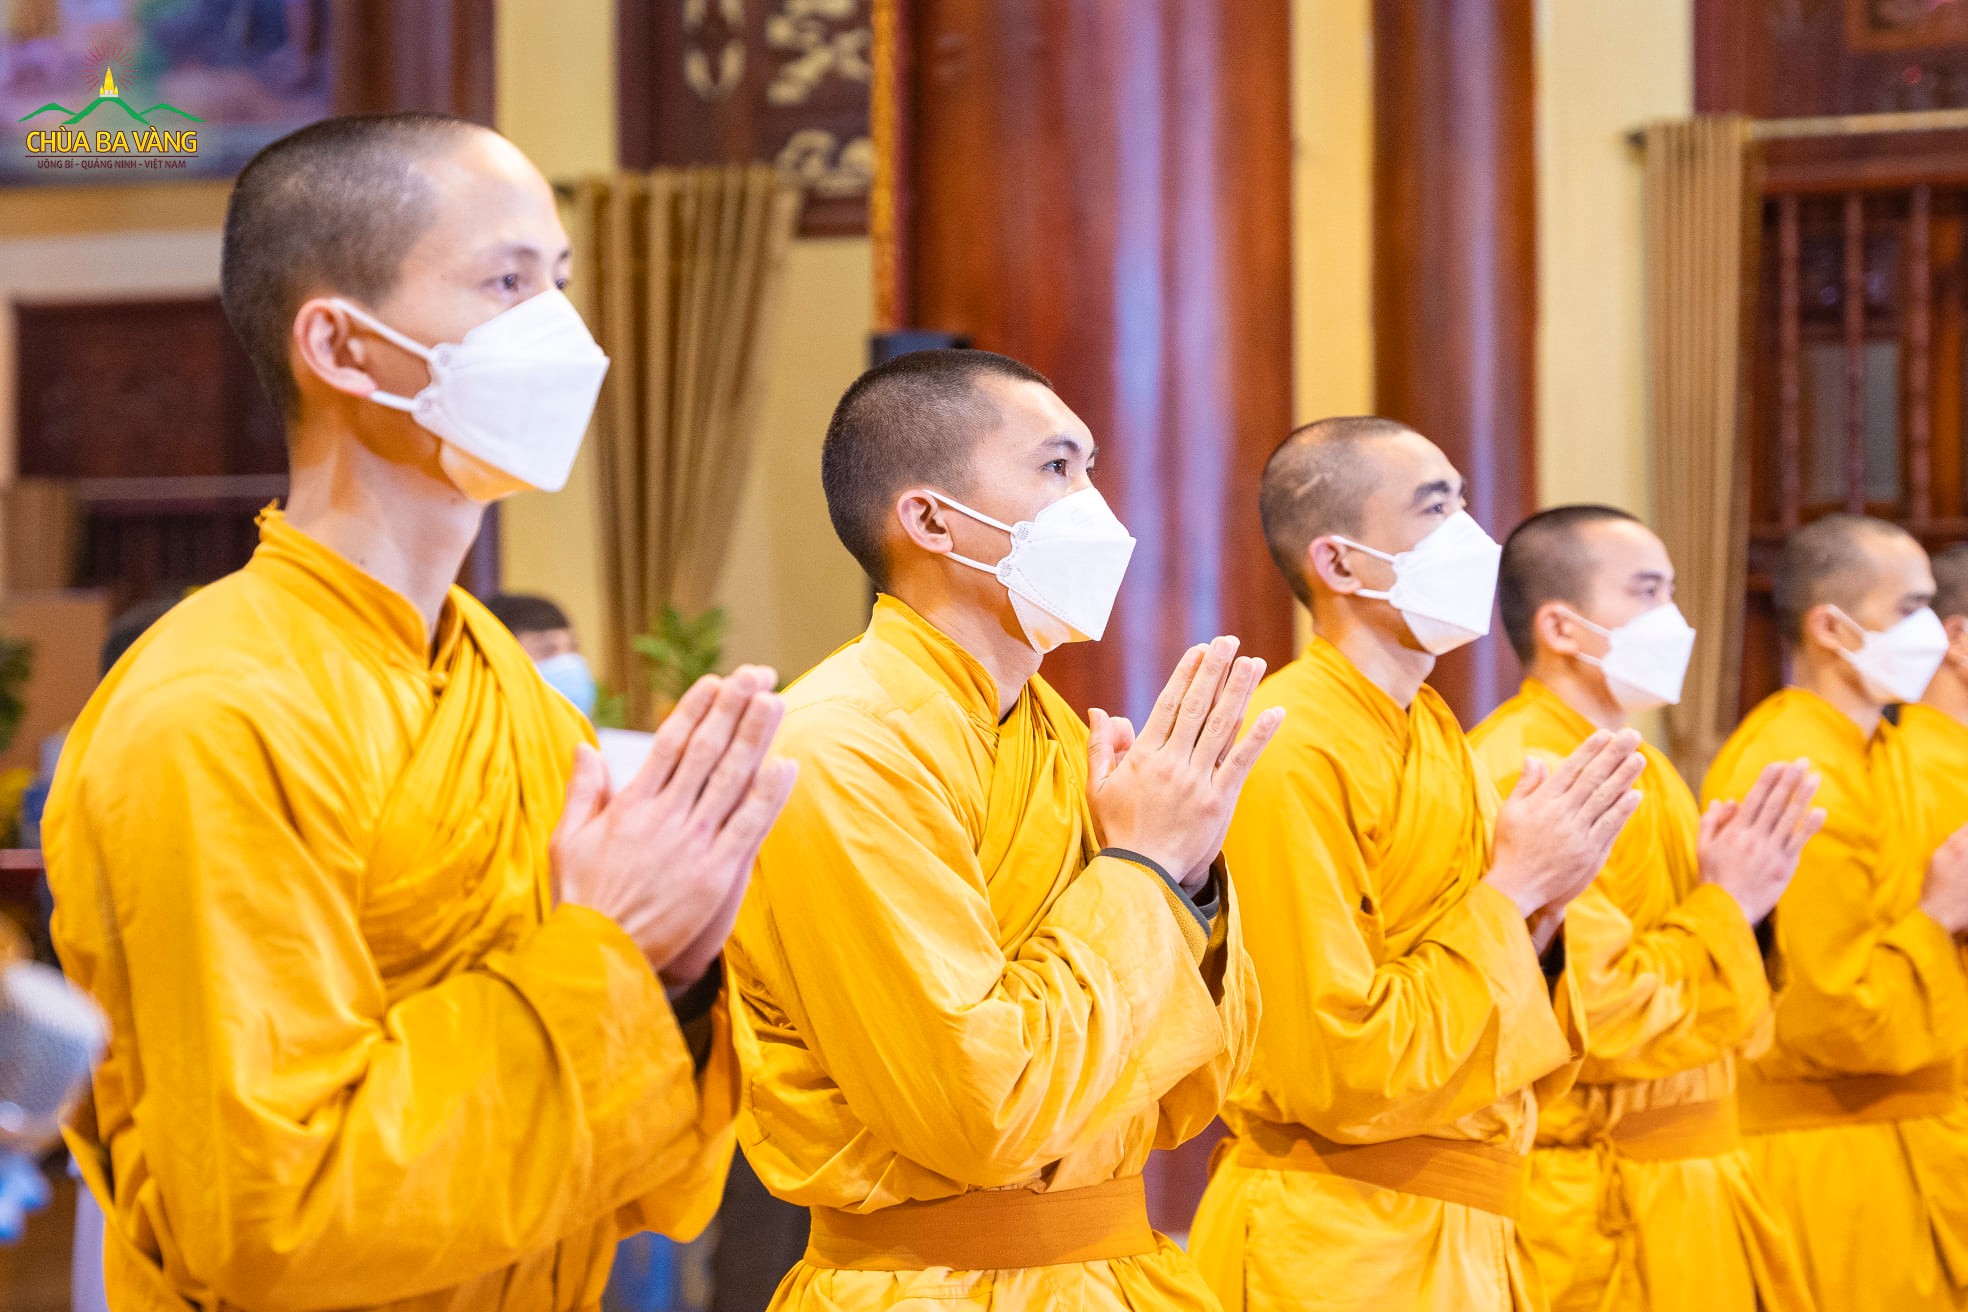 Hình ảnh chư Tăng chắp tay trang nghiêm tác lễ cầu an để nhân dân, Phật tử thập phương hướng tâm tham dự chương trình